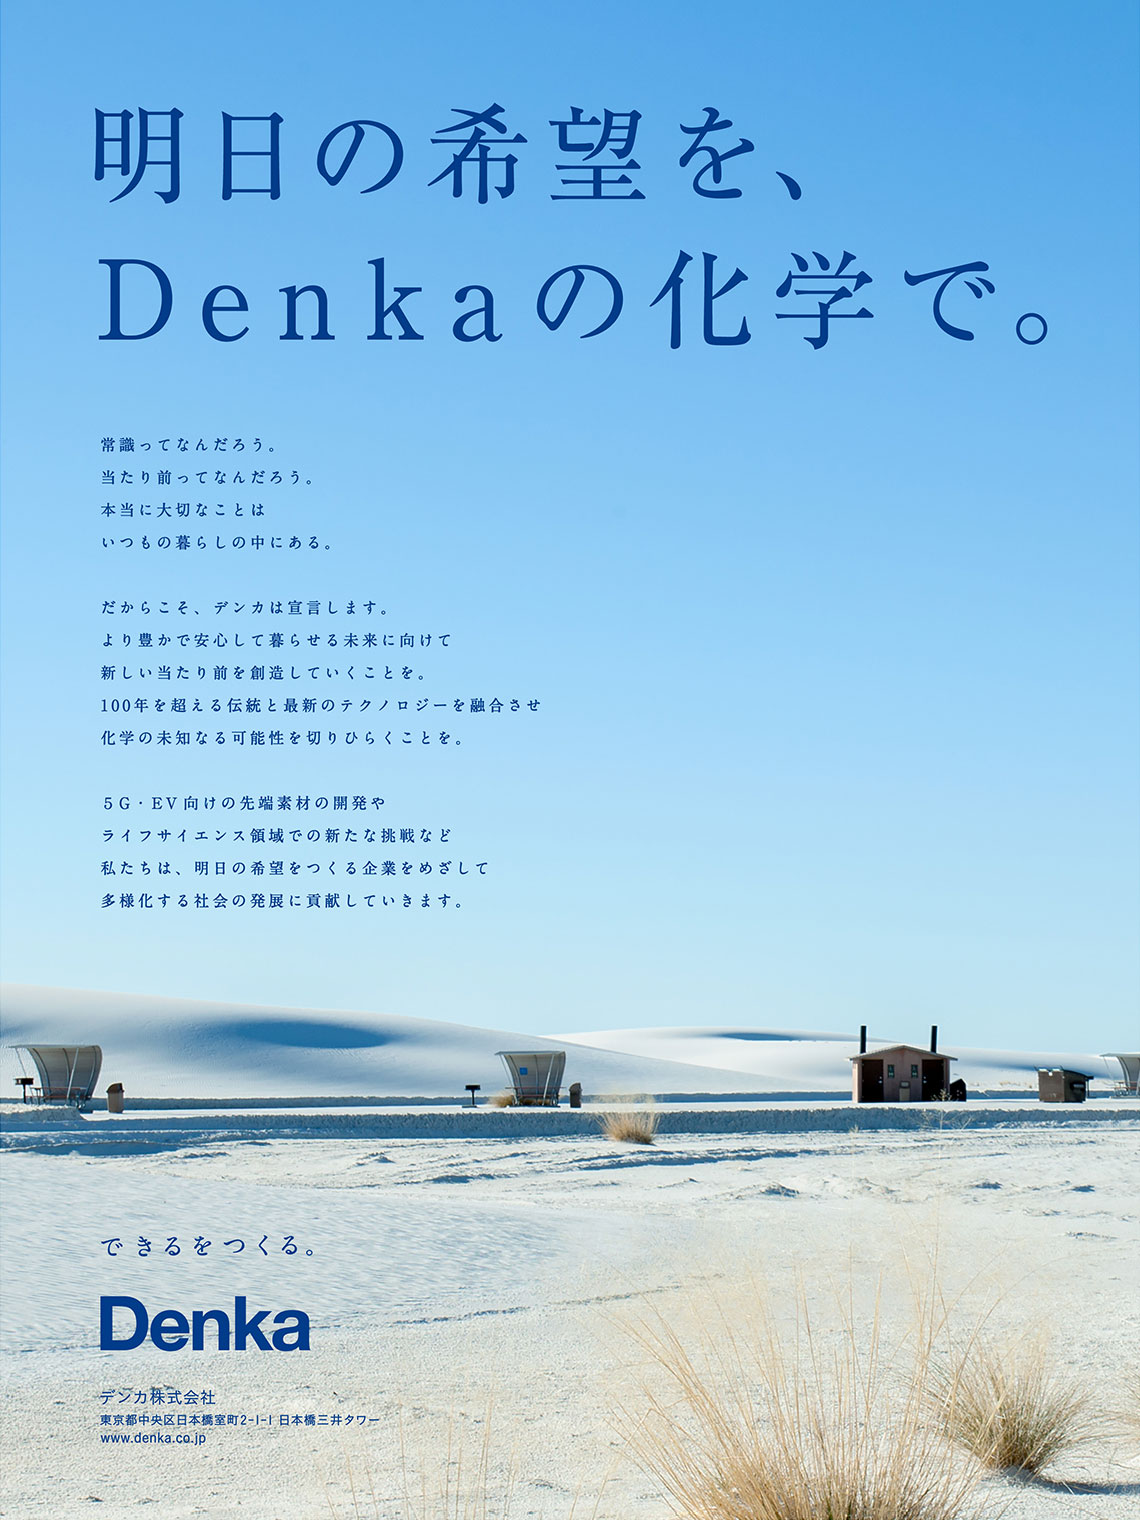 企業広告とデザイン デンカ株式会社